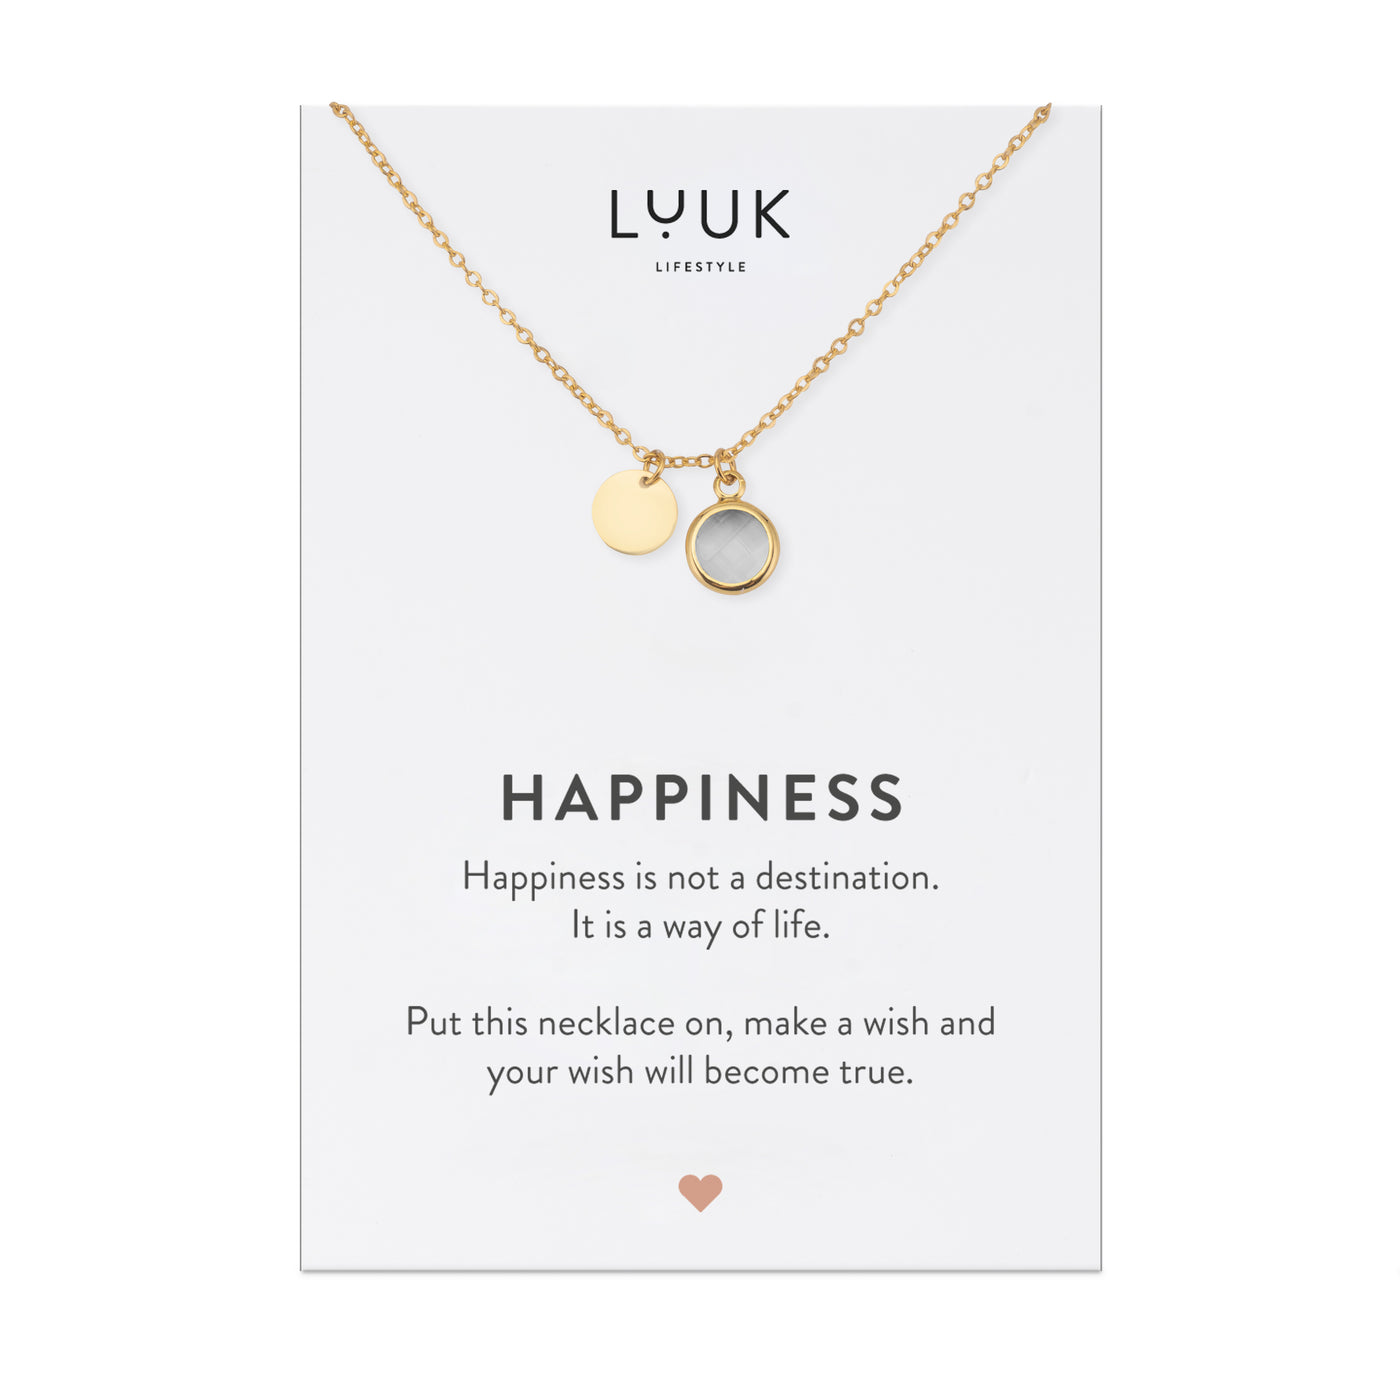 Goldene Halskette mit weißem Kristall Anhänger auf Happiness Spruchkarte von der Marke Luuk Lifestyle